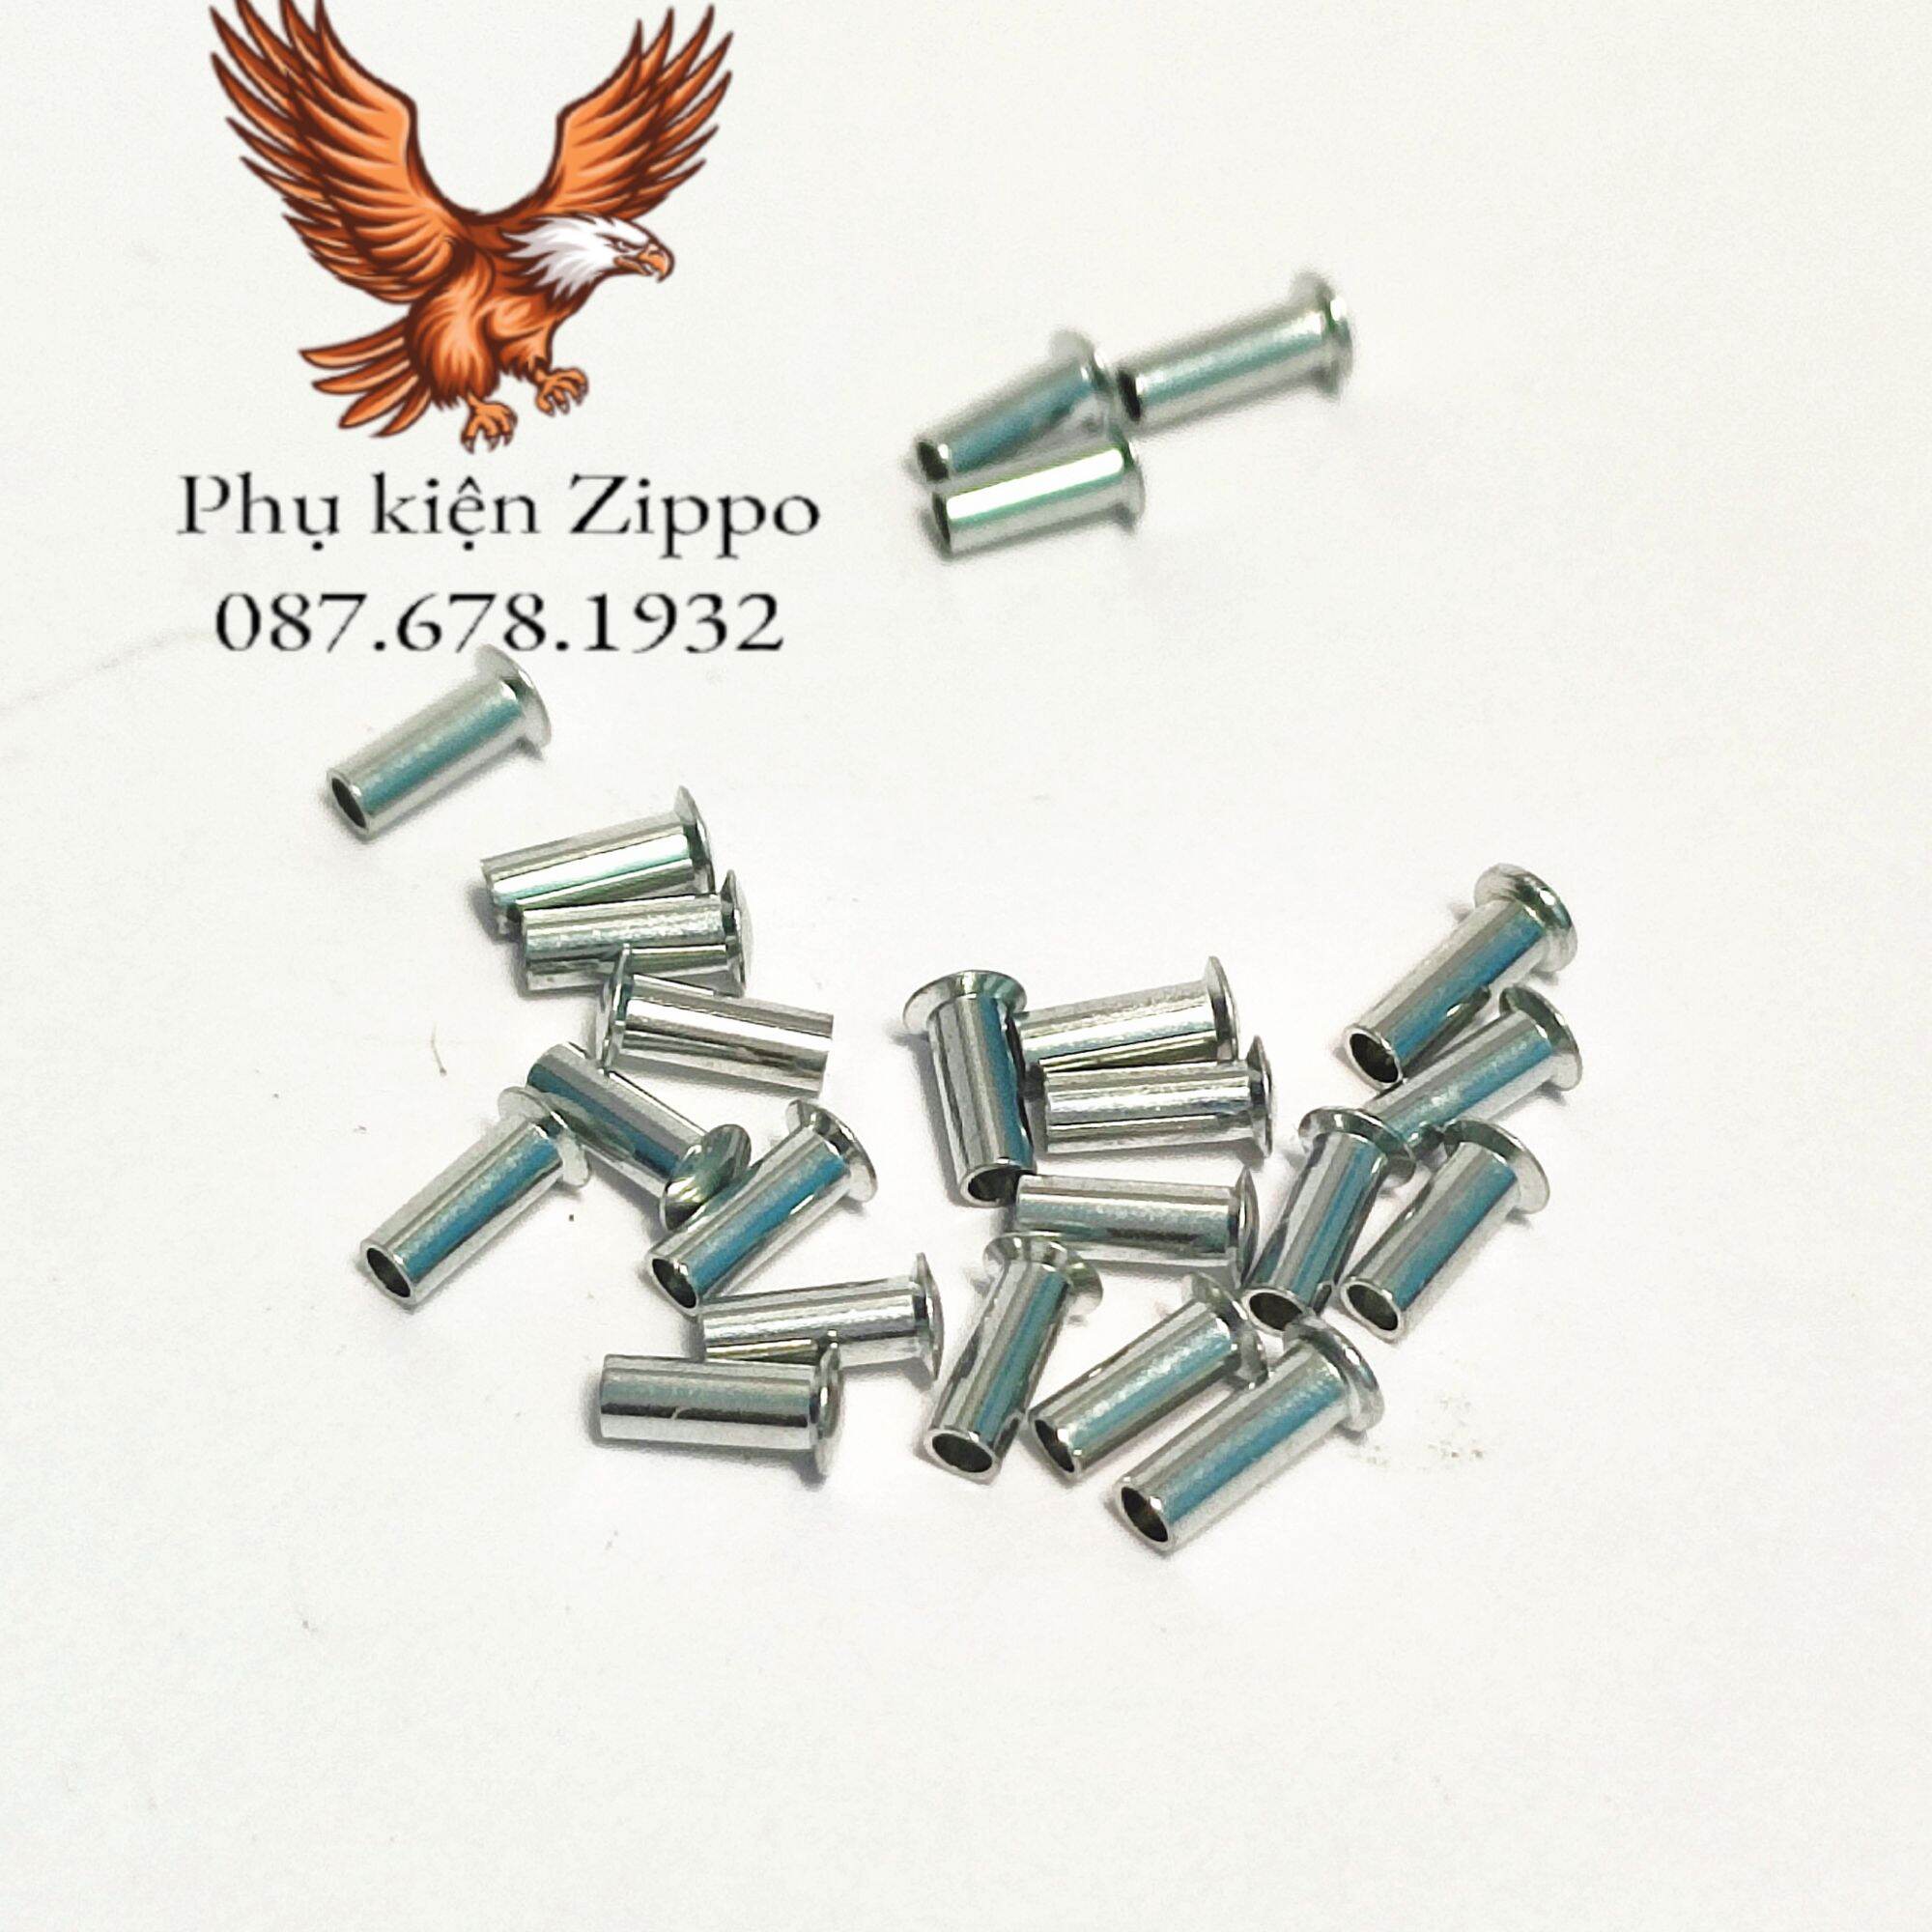 [Phụ kiện Zippo] Chốt tán sắt bánh xe Zippo đặc, chuẩn size như zin 1:1